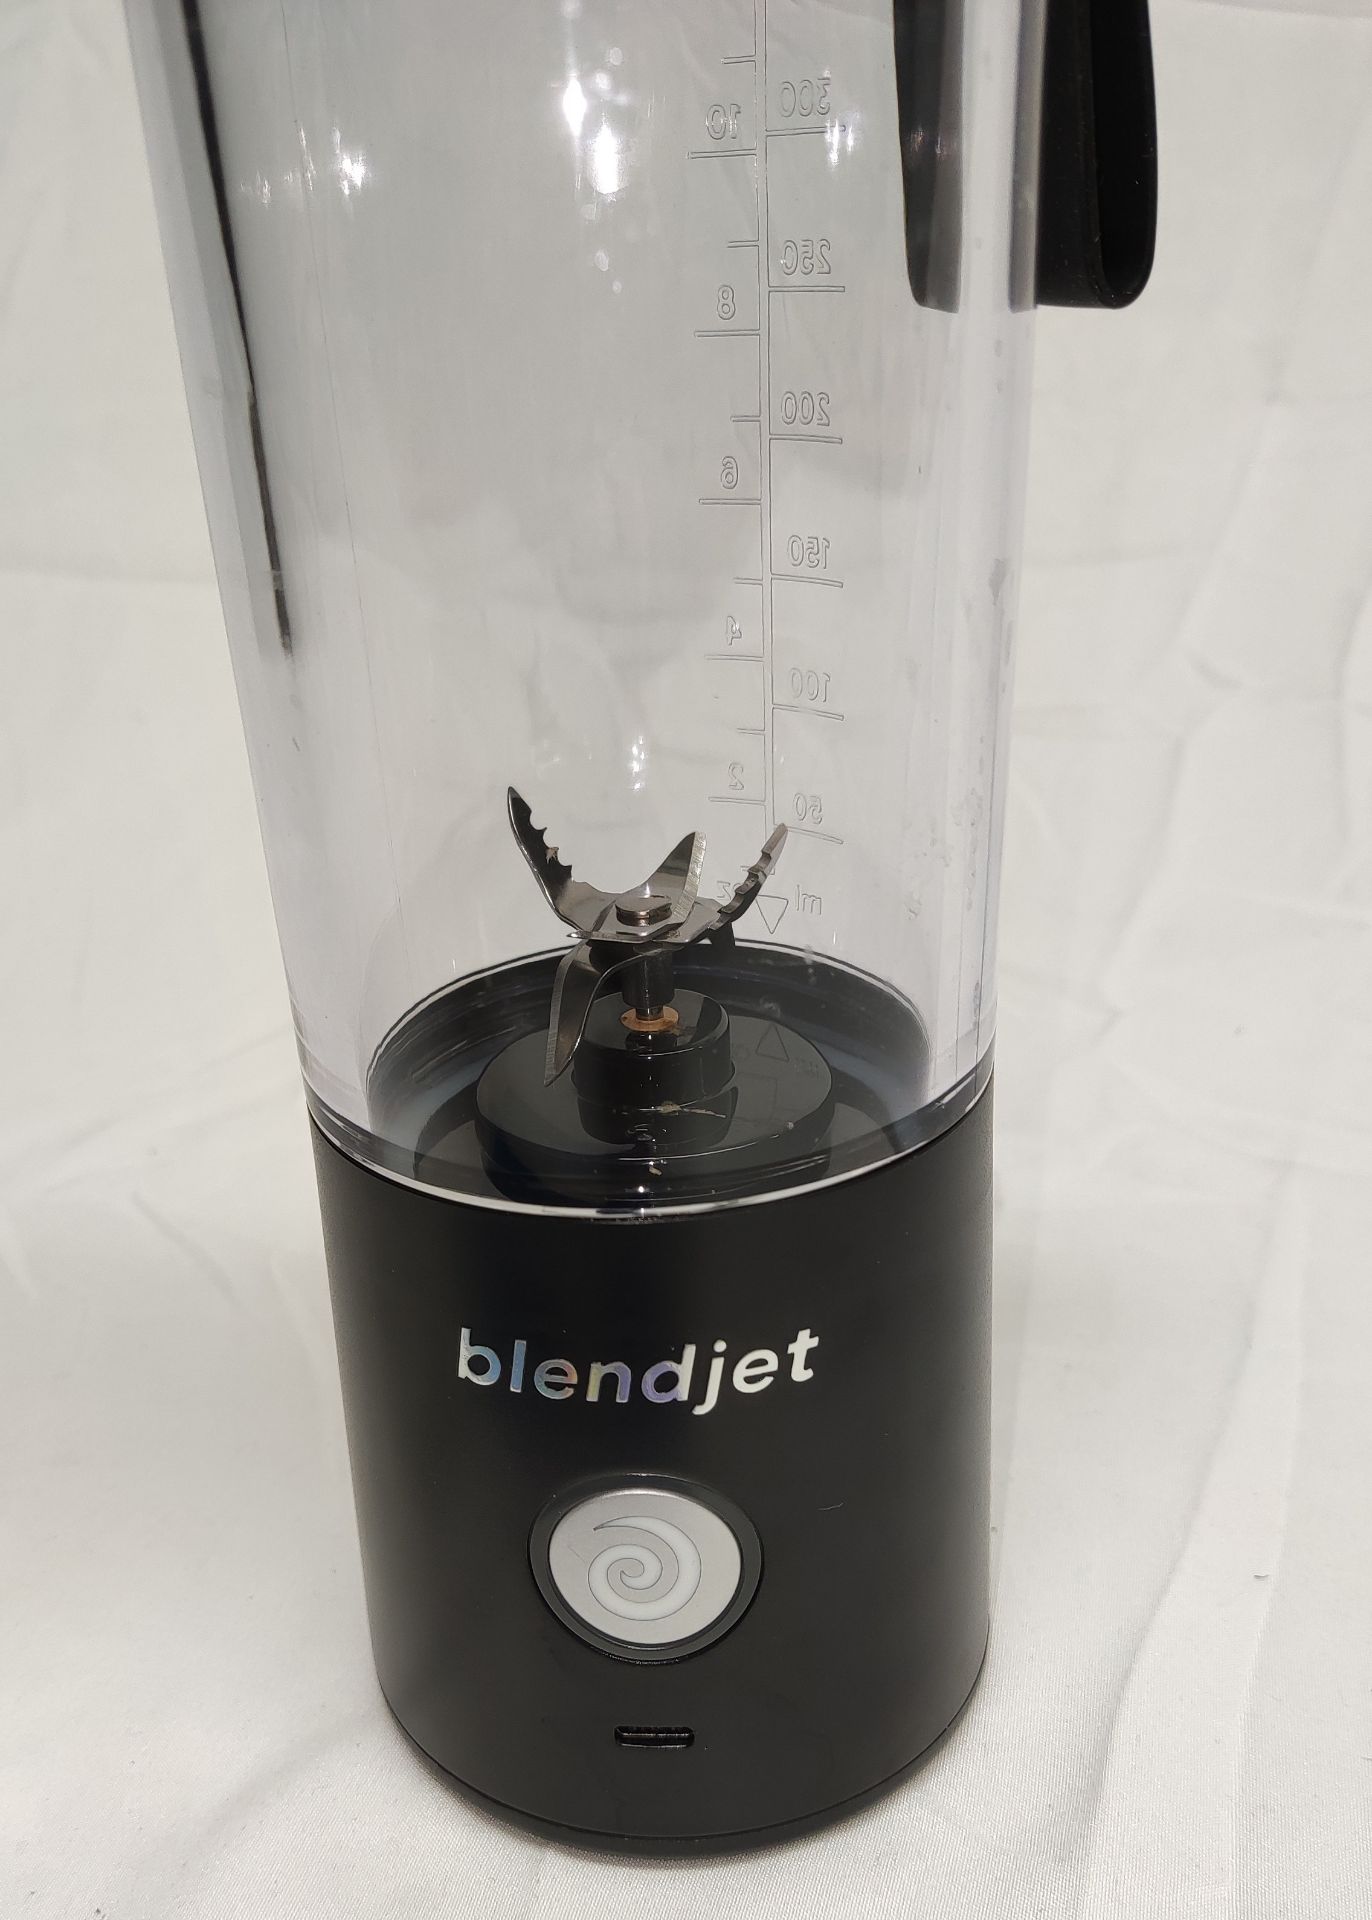 1 x BLENDJET Portable Blender (Blendjet 2) In Black - Original RRP £49.99 - Ref: 7097506/HJL376/ - Image 11 of 14